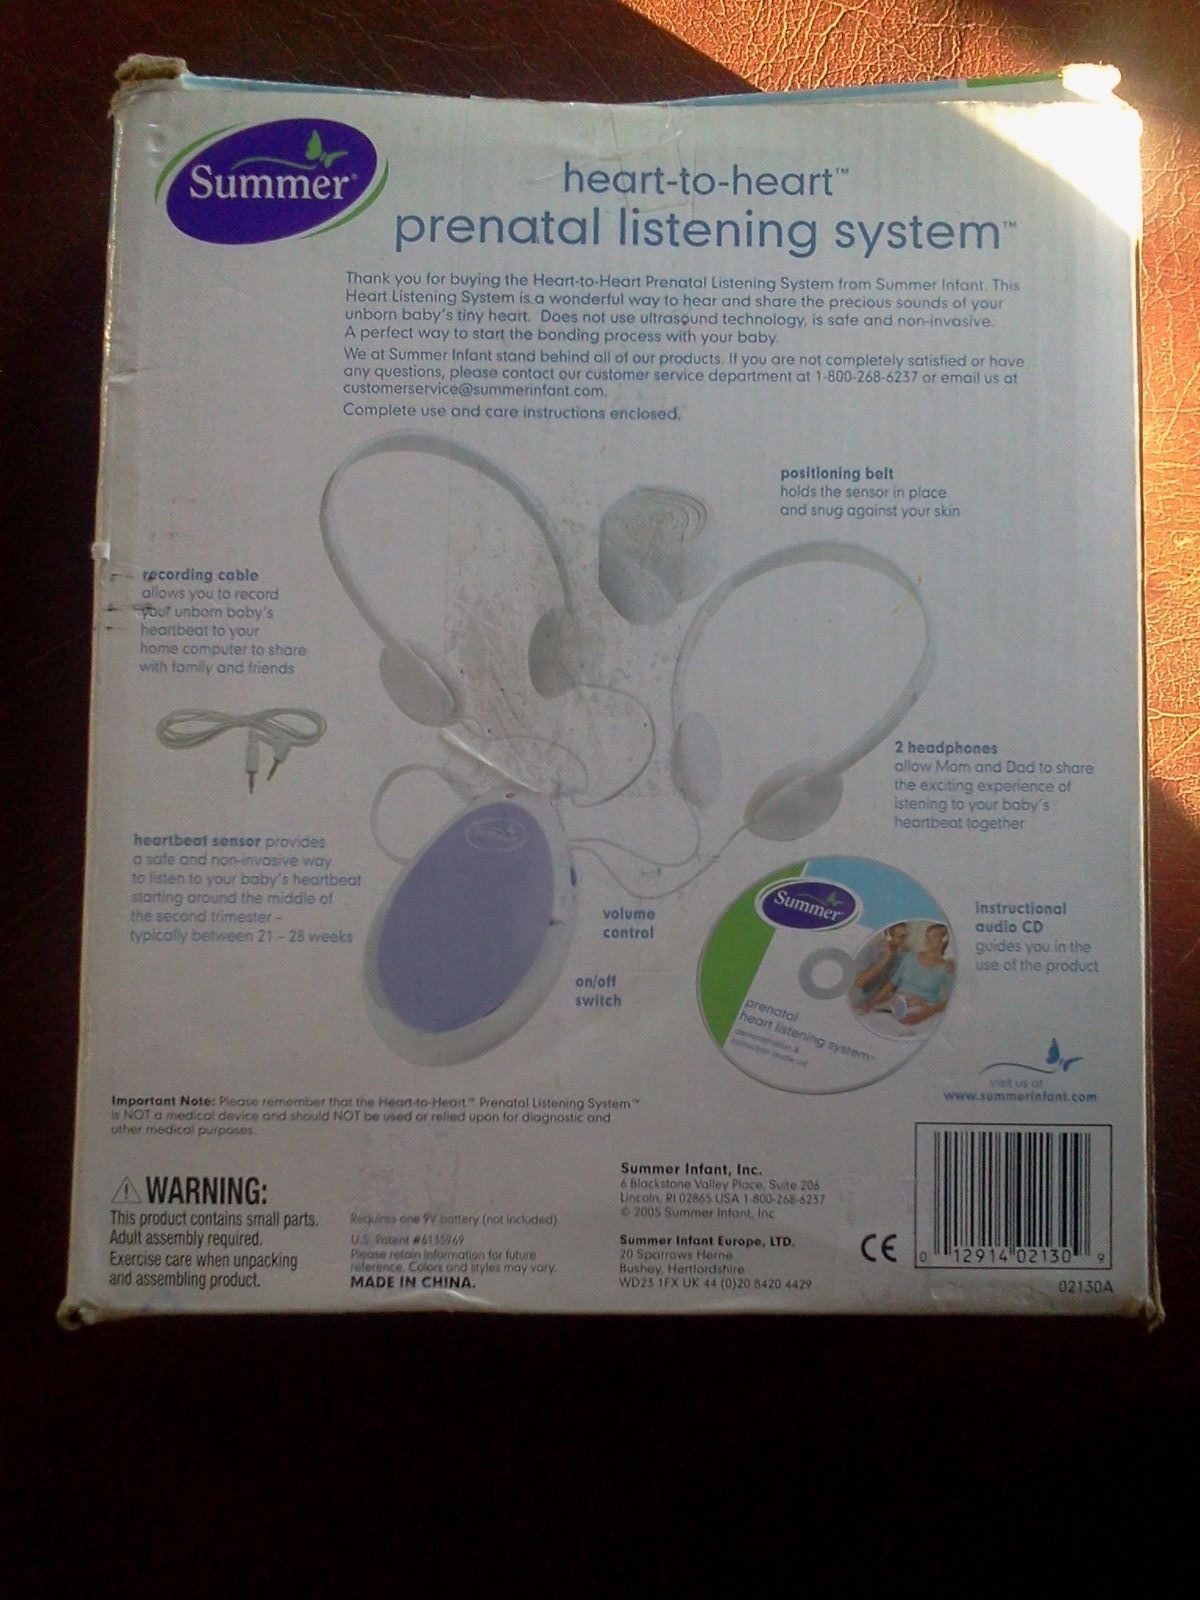 Summer prenatal listening system instructions